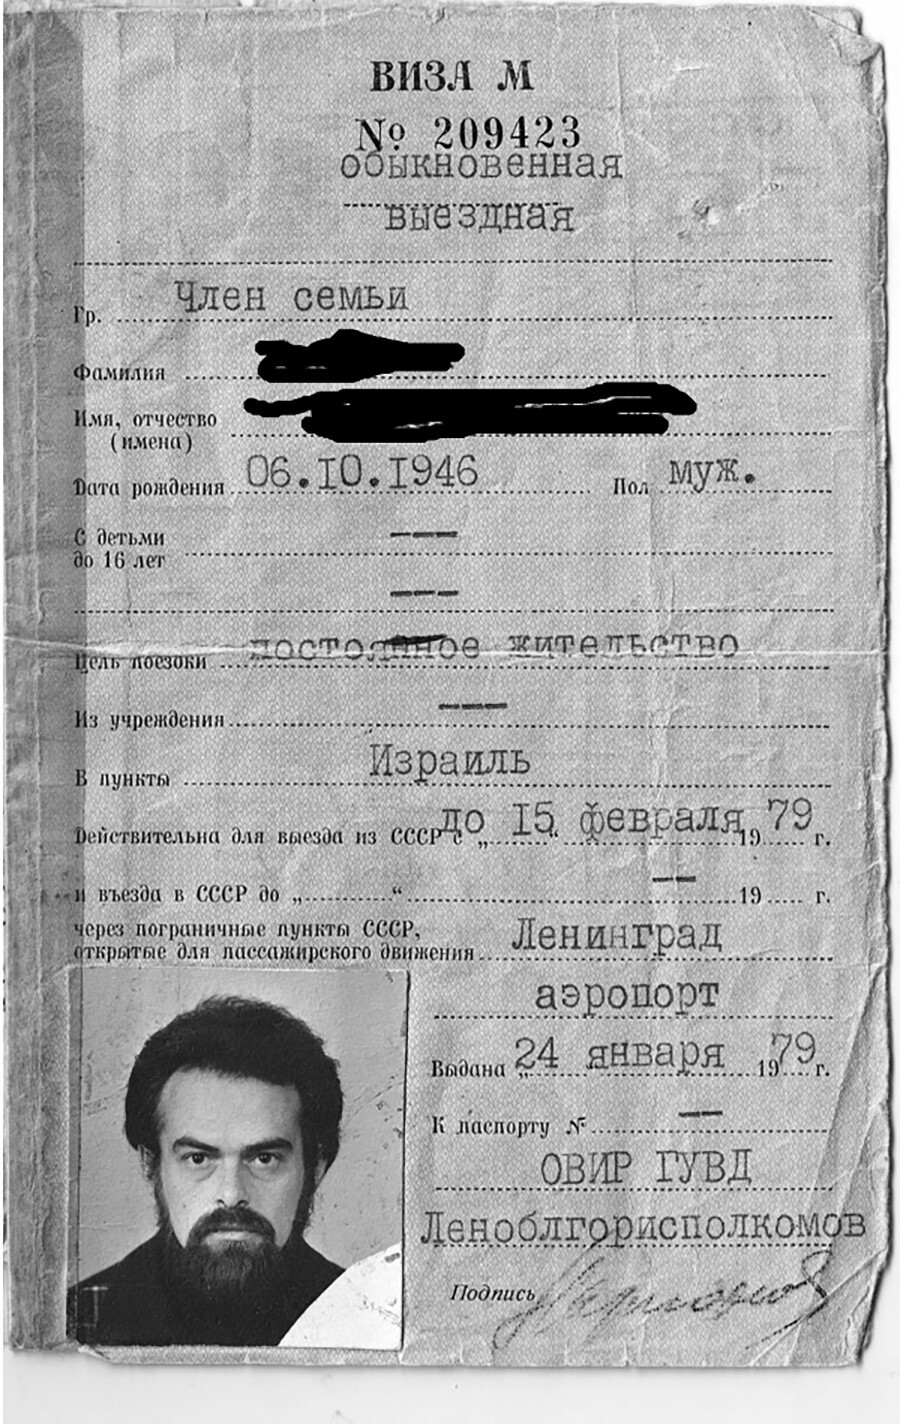 Un visto d'uscita sovietico del secondo tipo (che permette cioè di lasciare l'URSS in modo permanente)
